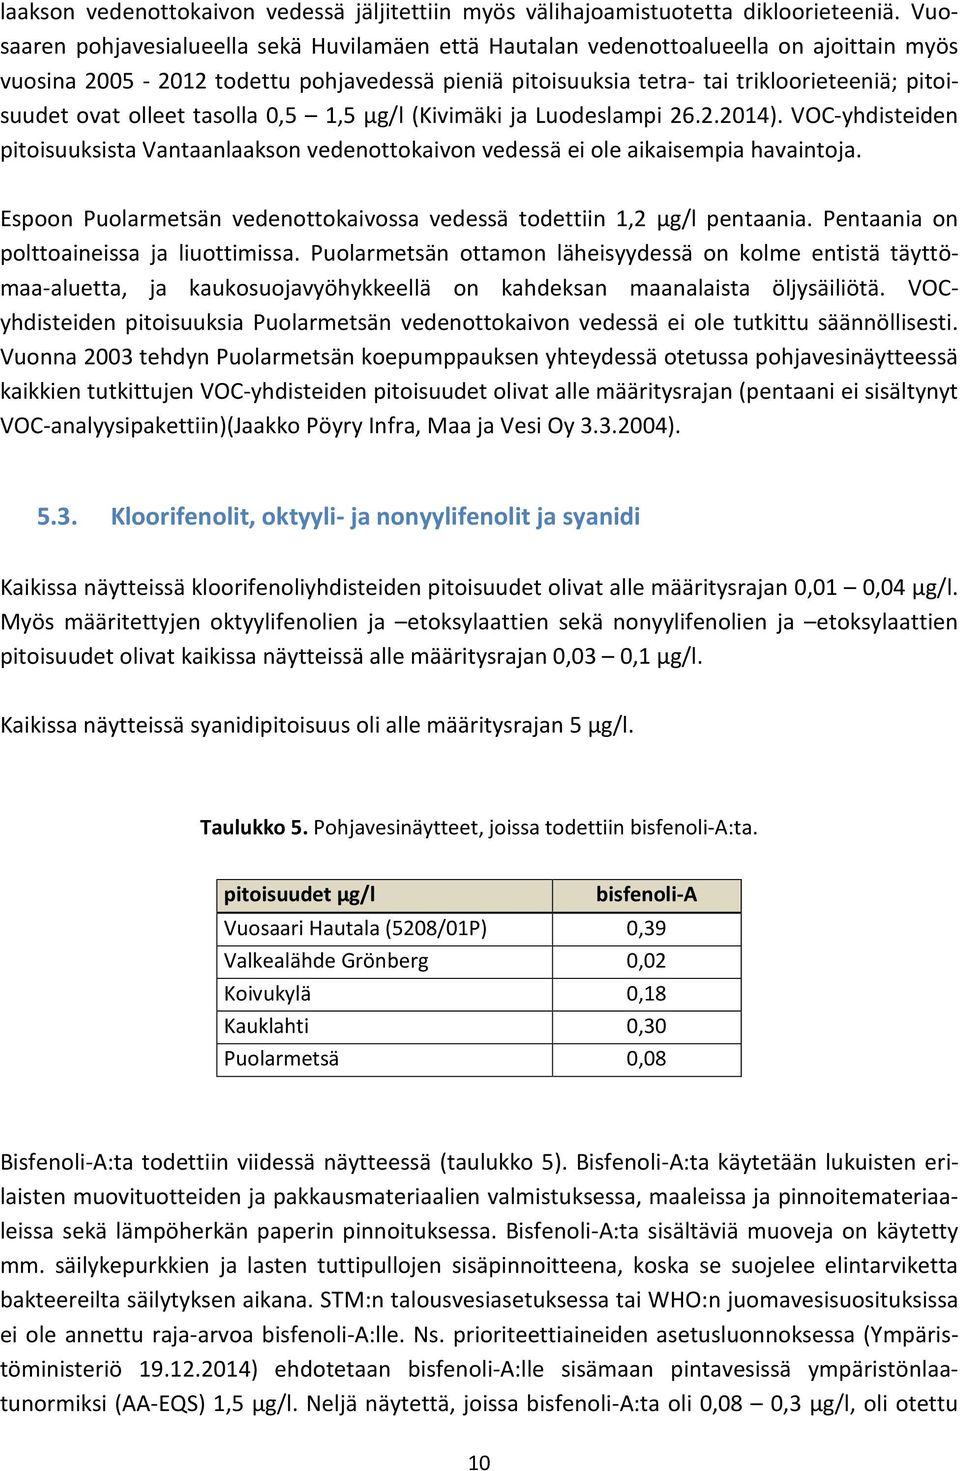 olleet tasolla 0,5 1,5 µg/l (Kivimäki ja Luodeslampi 26.2.2014). VOC-yhdisteiden pitoisuuksista Vantaanlaakson vedenottokaivon vedessä ei ole aikaisempia havaintoja.